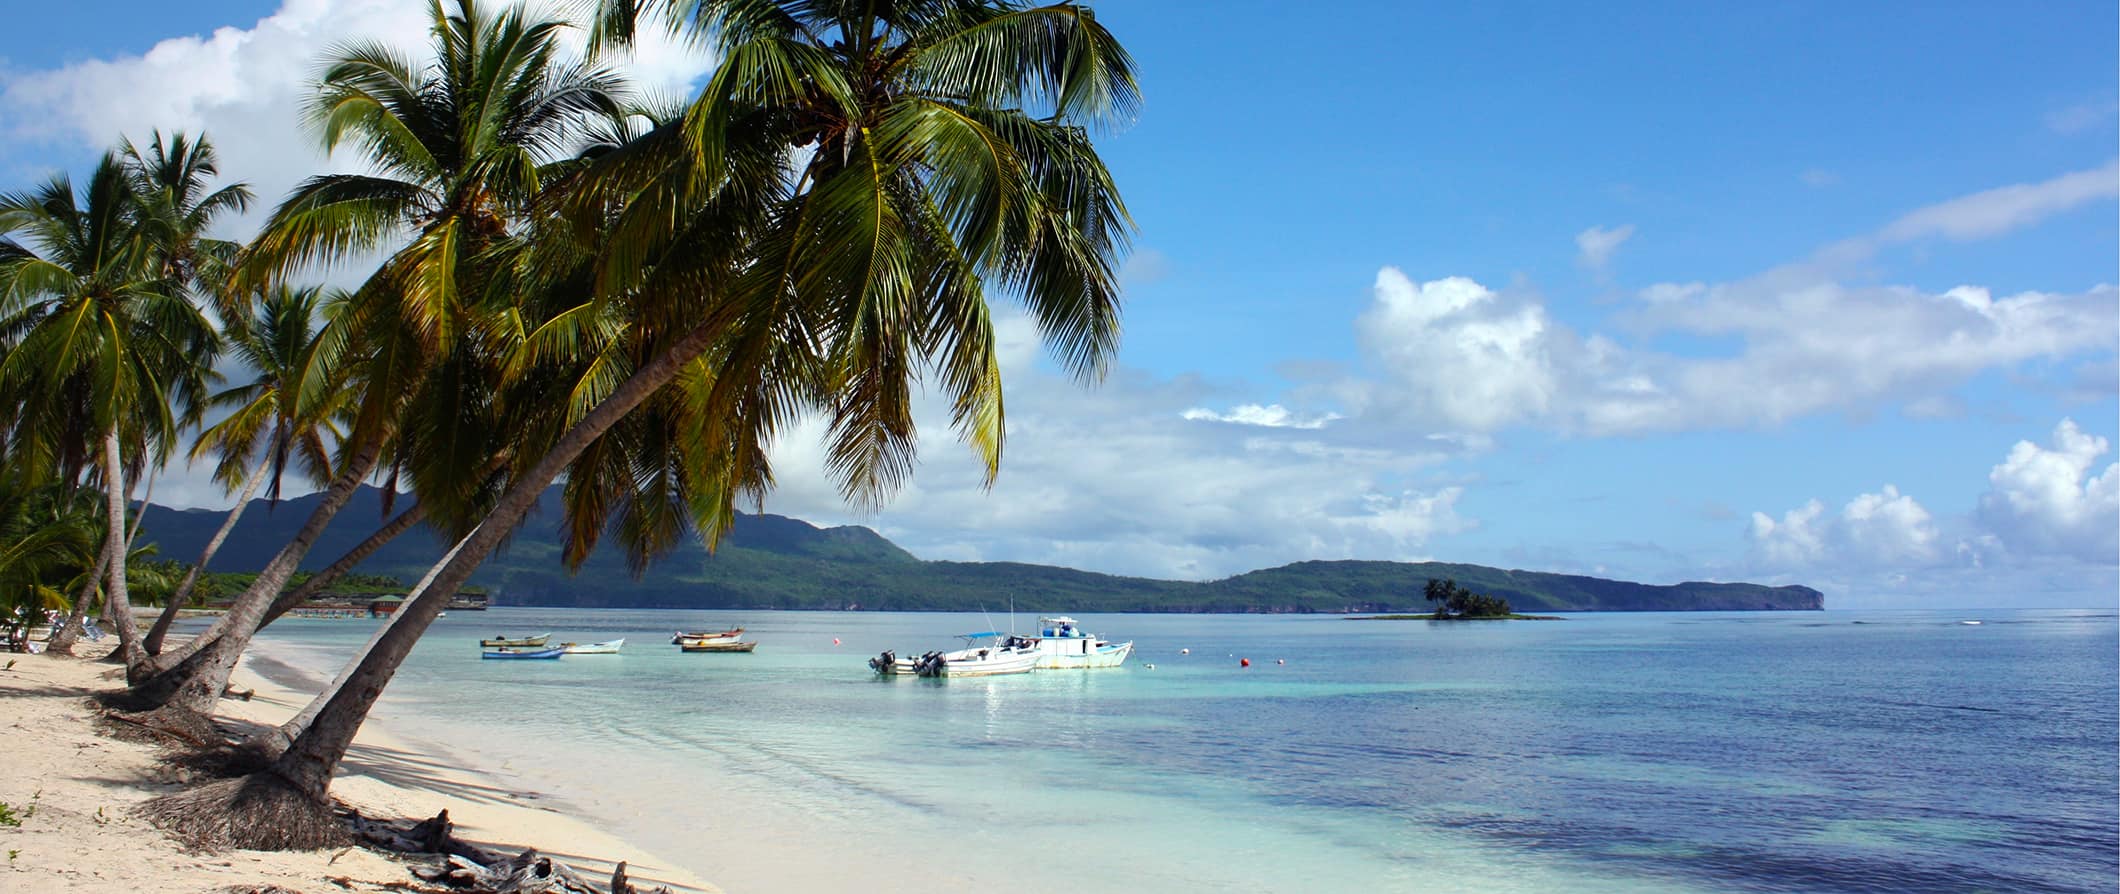 Uma praia intocada nas ilhas das Bermudas com palmeiras verdes magníficas e um céu azul brilhante.